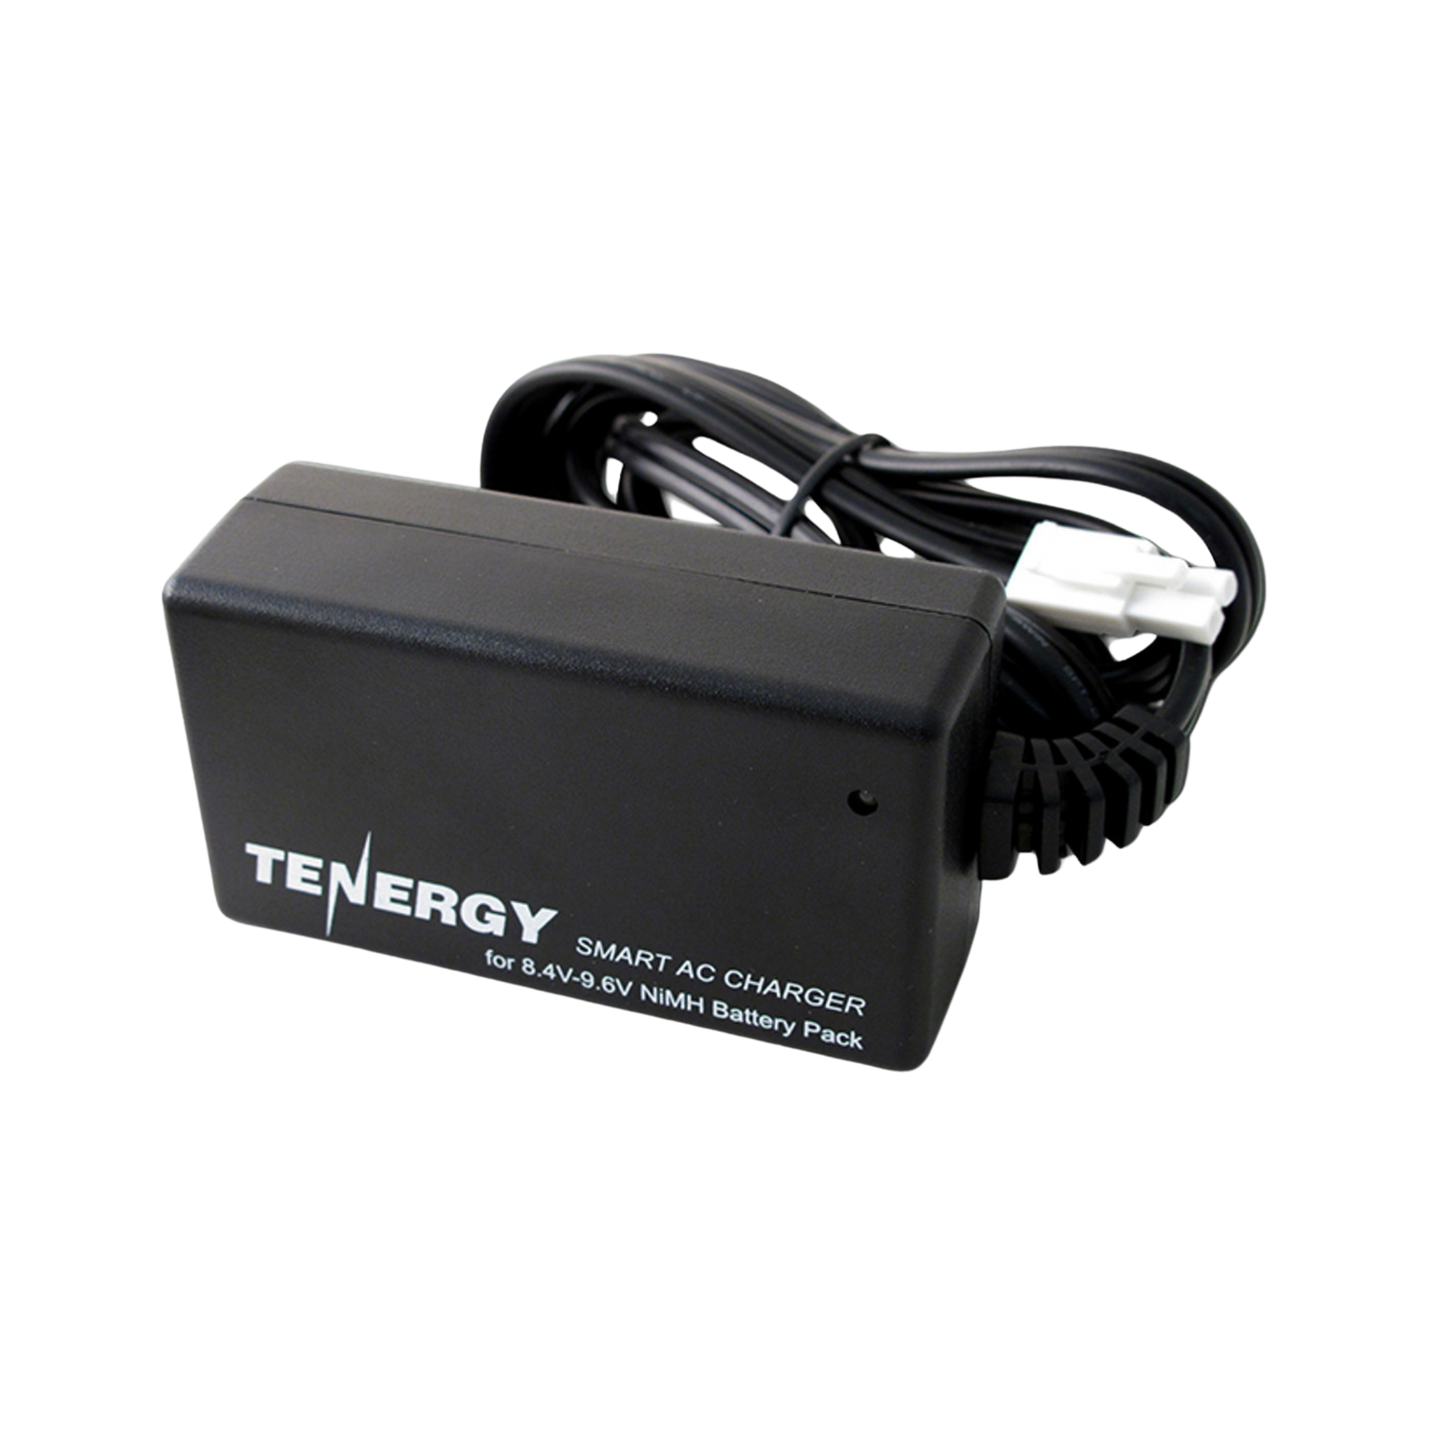 Tenergy Smart-Charger For NiMh Battery 8.4V - 9.6V